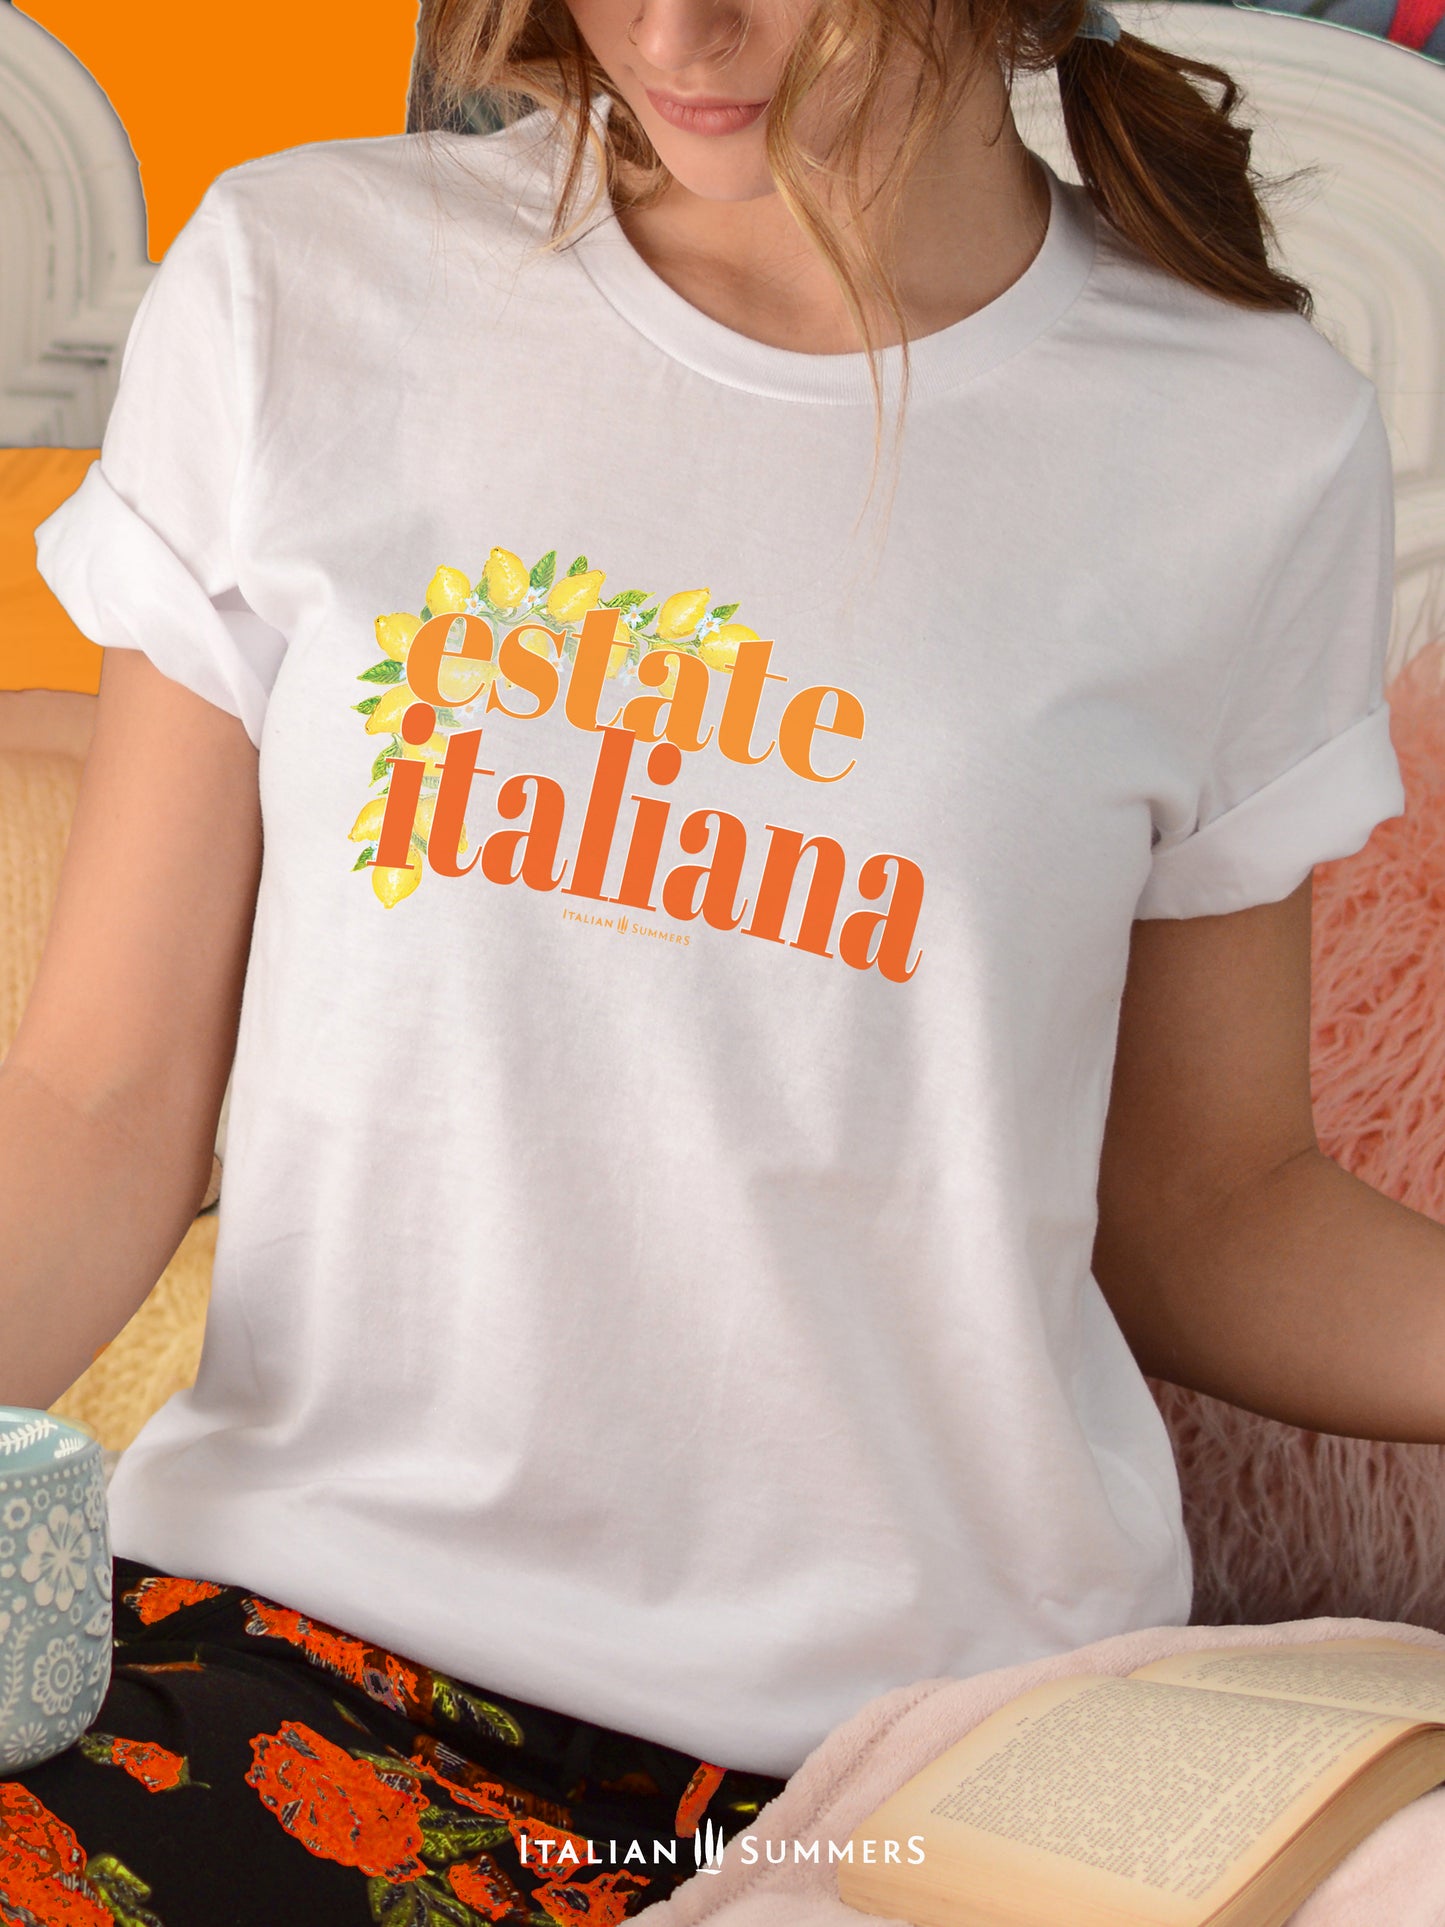 T-Shirt ESTATE ITALIANA Italian Summer, Italy travel, Italian theme